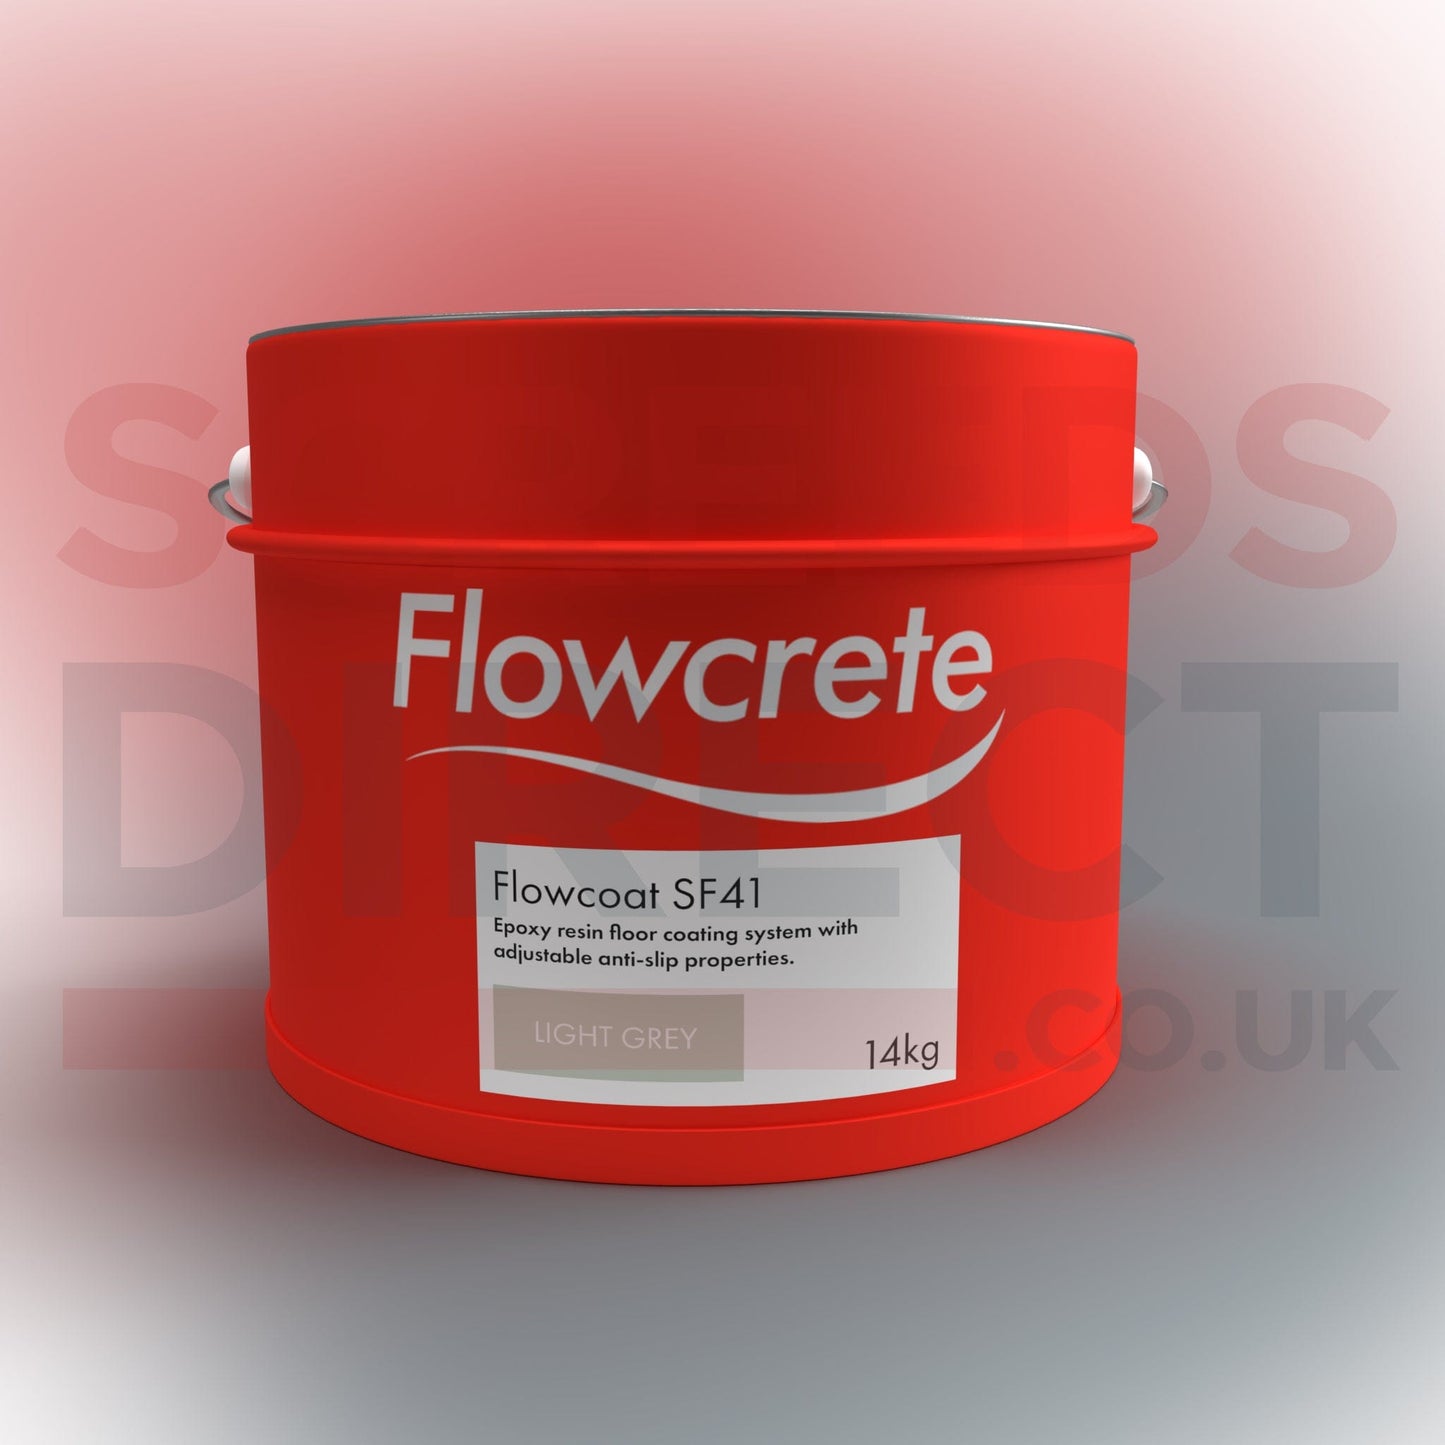 Flowcrete Building Materials Epoxy Floor Coat - Flowcrete SF41 Light Grey 14kg